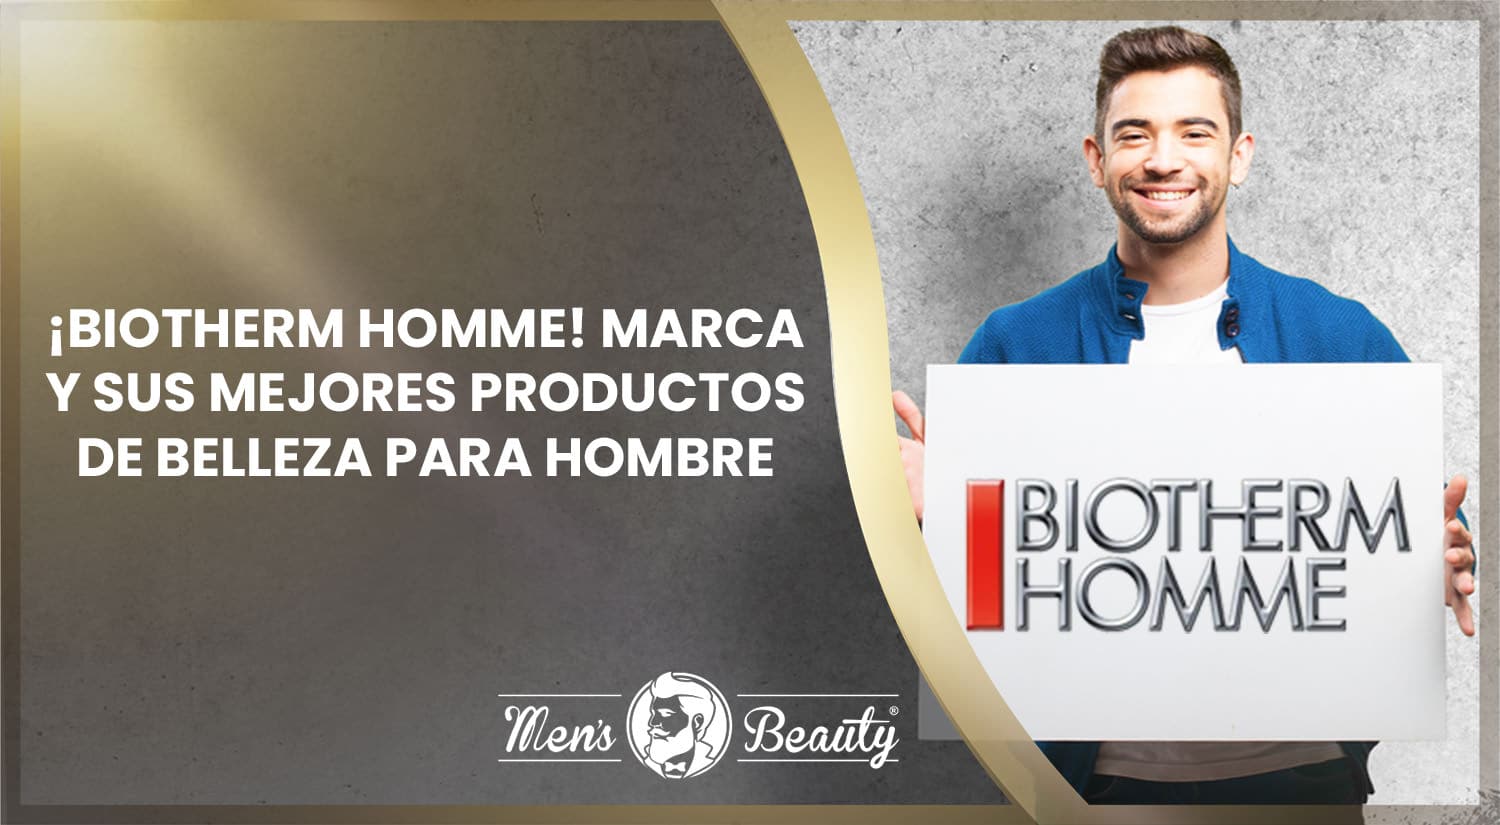 mejores productos belleza hombre biotherm homme marca tendencias